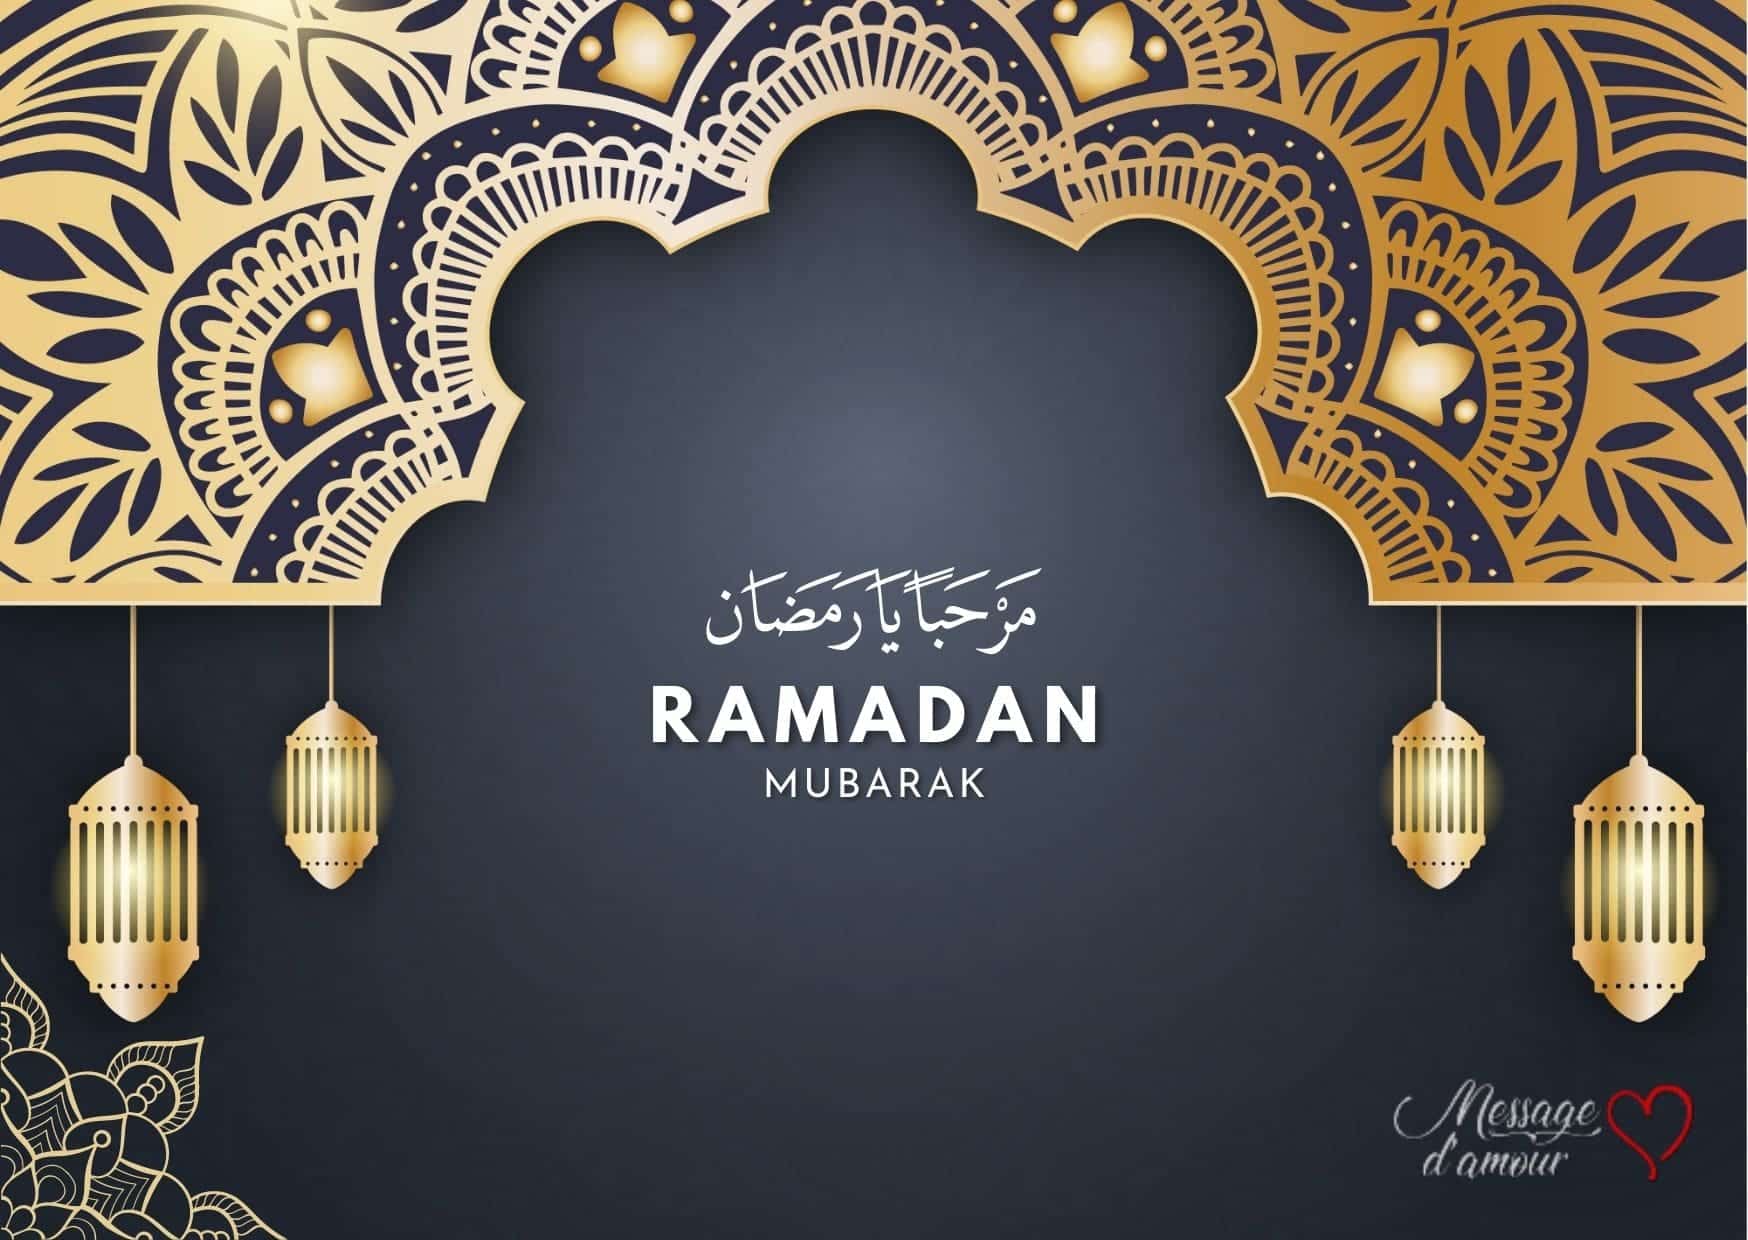 Marhaban Ya ramadan Ramadan mubarak